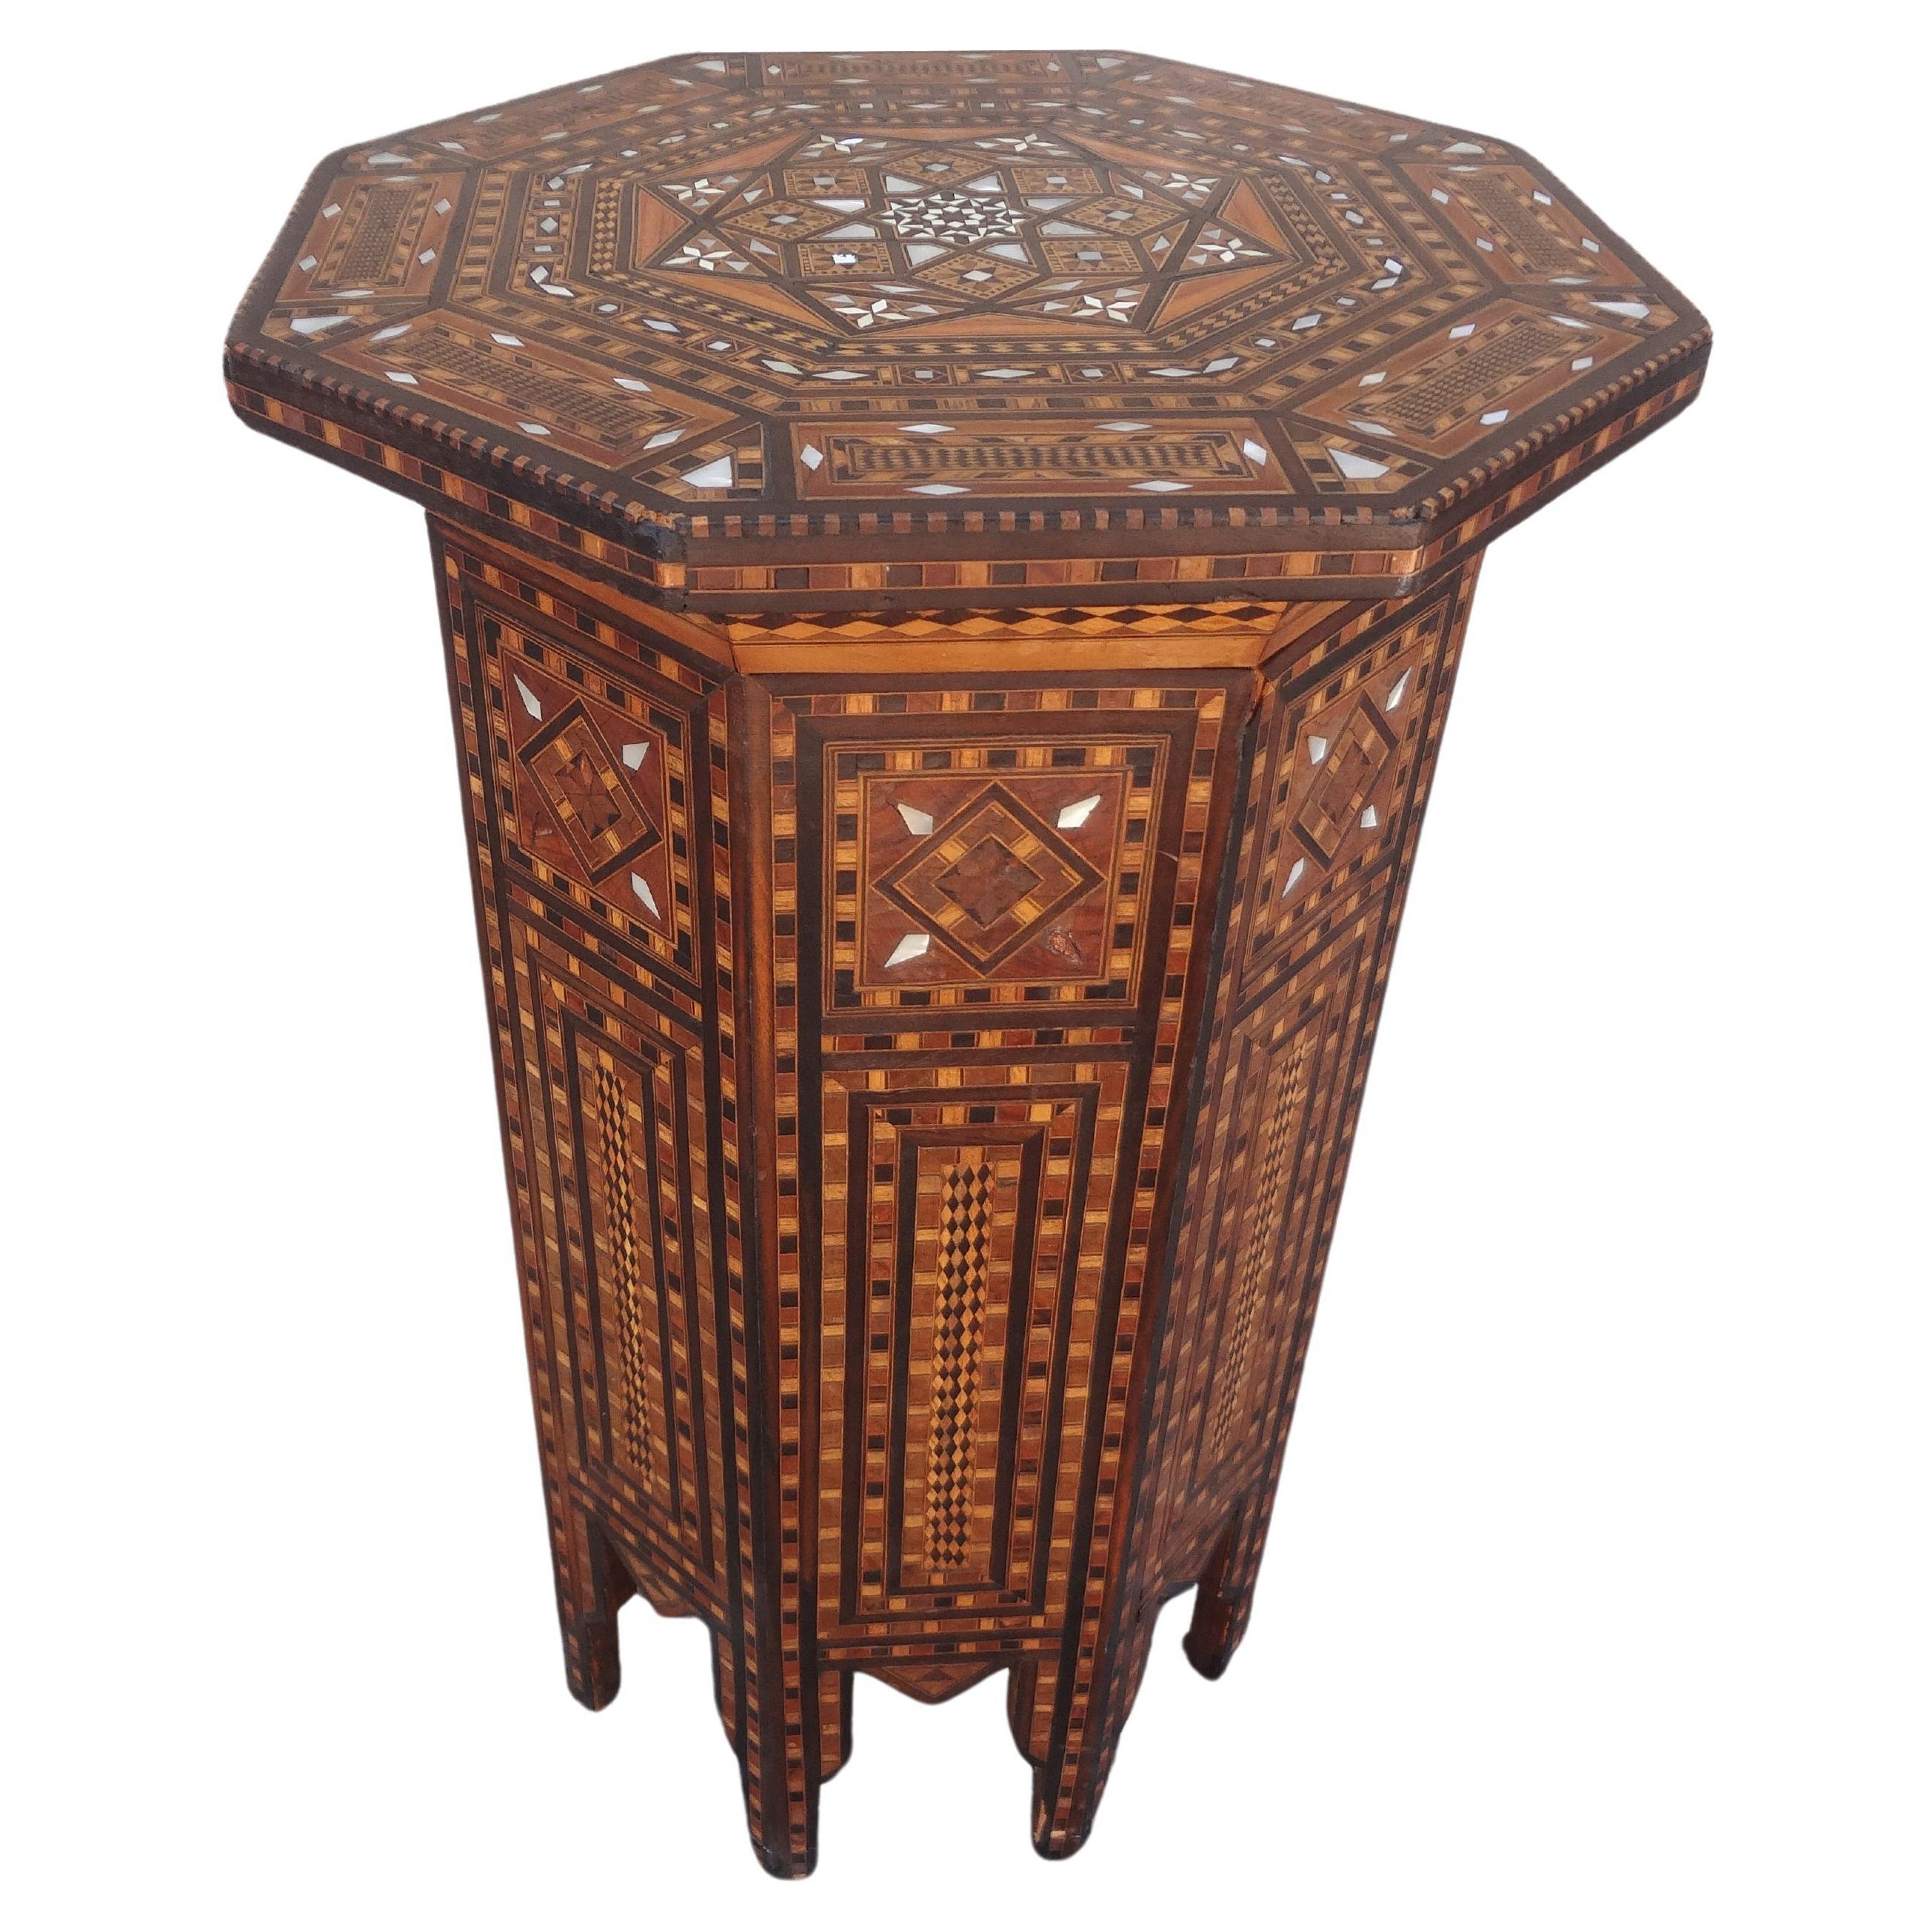 Vieille table octogonale incrustée de style arabesque du Moyen-Orient